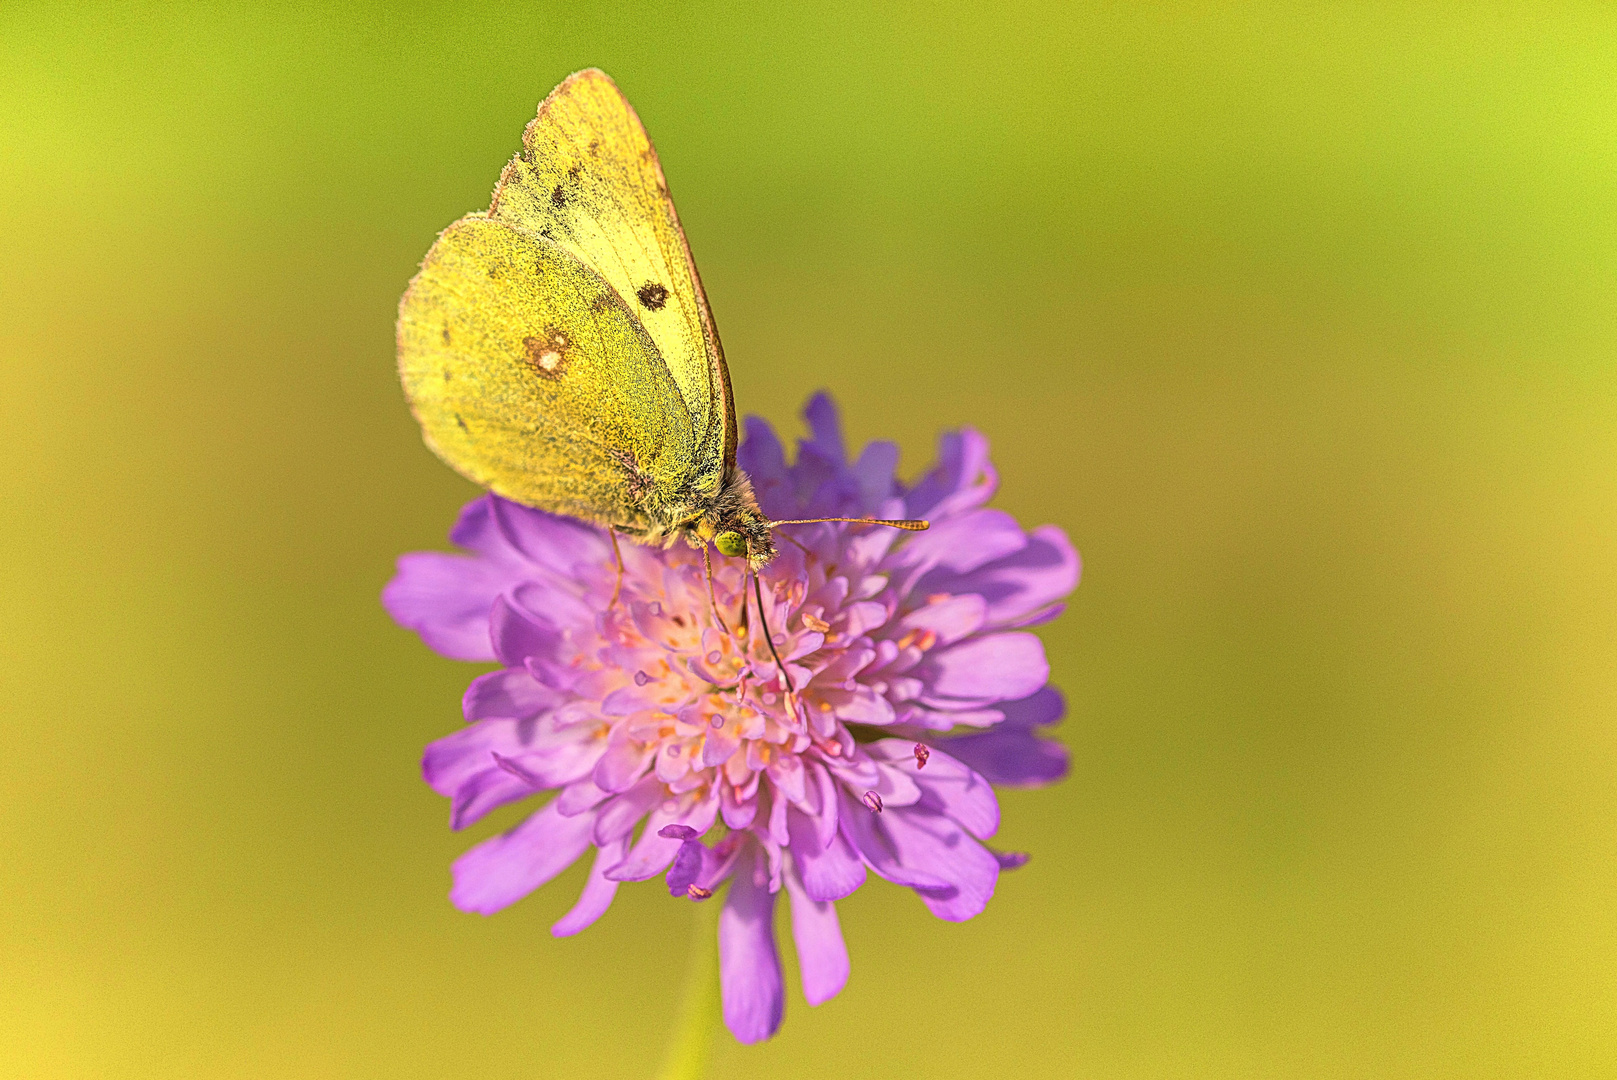 Schmetterlinge weinen nicht – sie sterben leise! (3) – Goldene Acht solo (2)